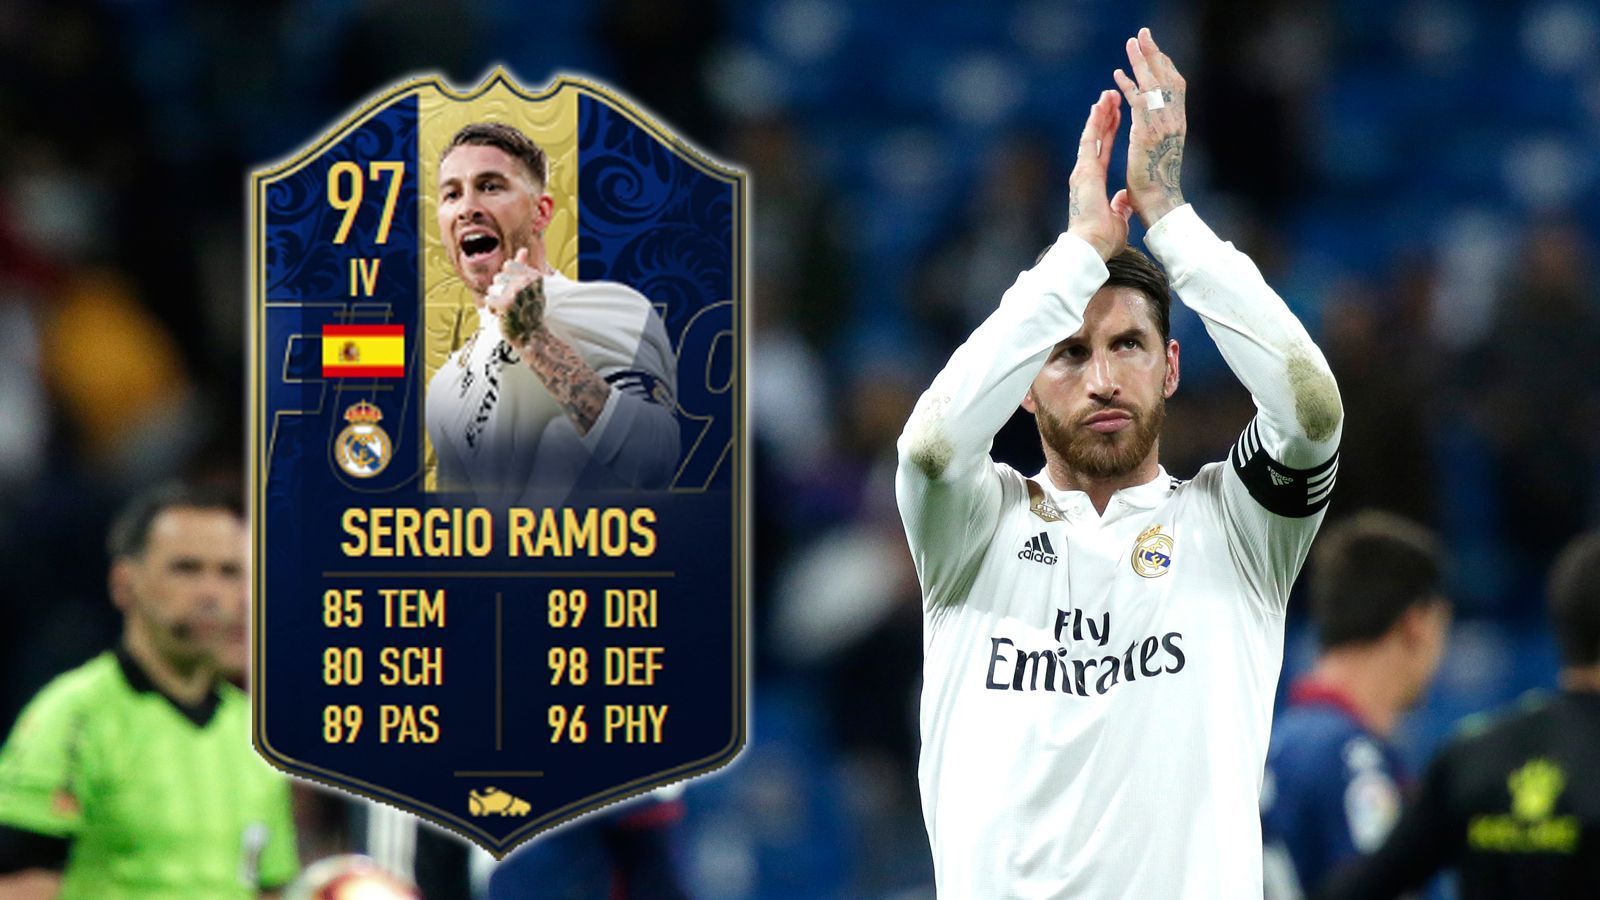 
                <strong>Innenverteidiger: Sergio Ramos</strong><br>
                Auch wenn er bisweilen mit seinem Charakter aneckt, Sergio Ramos ist eine absolute Legende. Auch in FIFA 19 wird das gewürdigt.
              